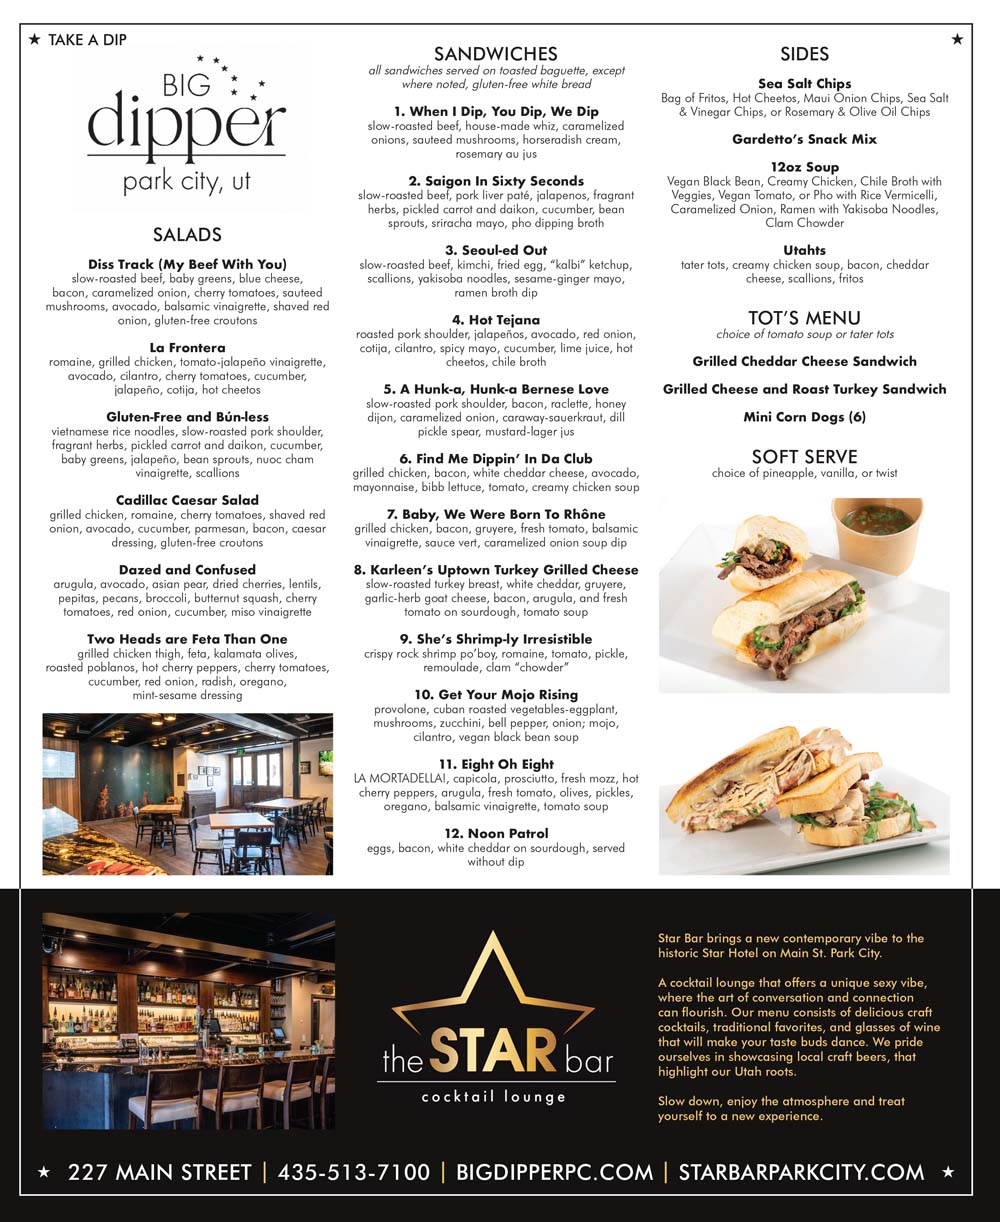 Big Dipper + Star Bar